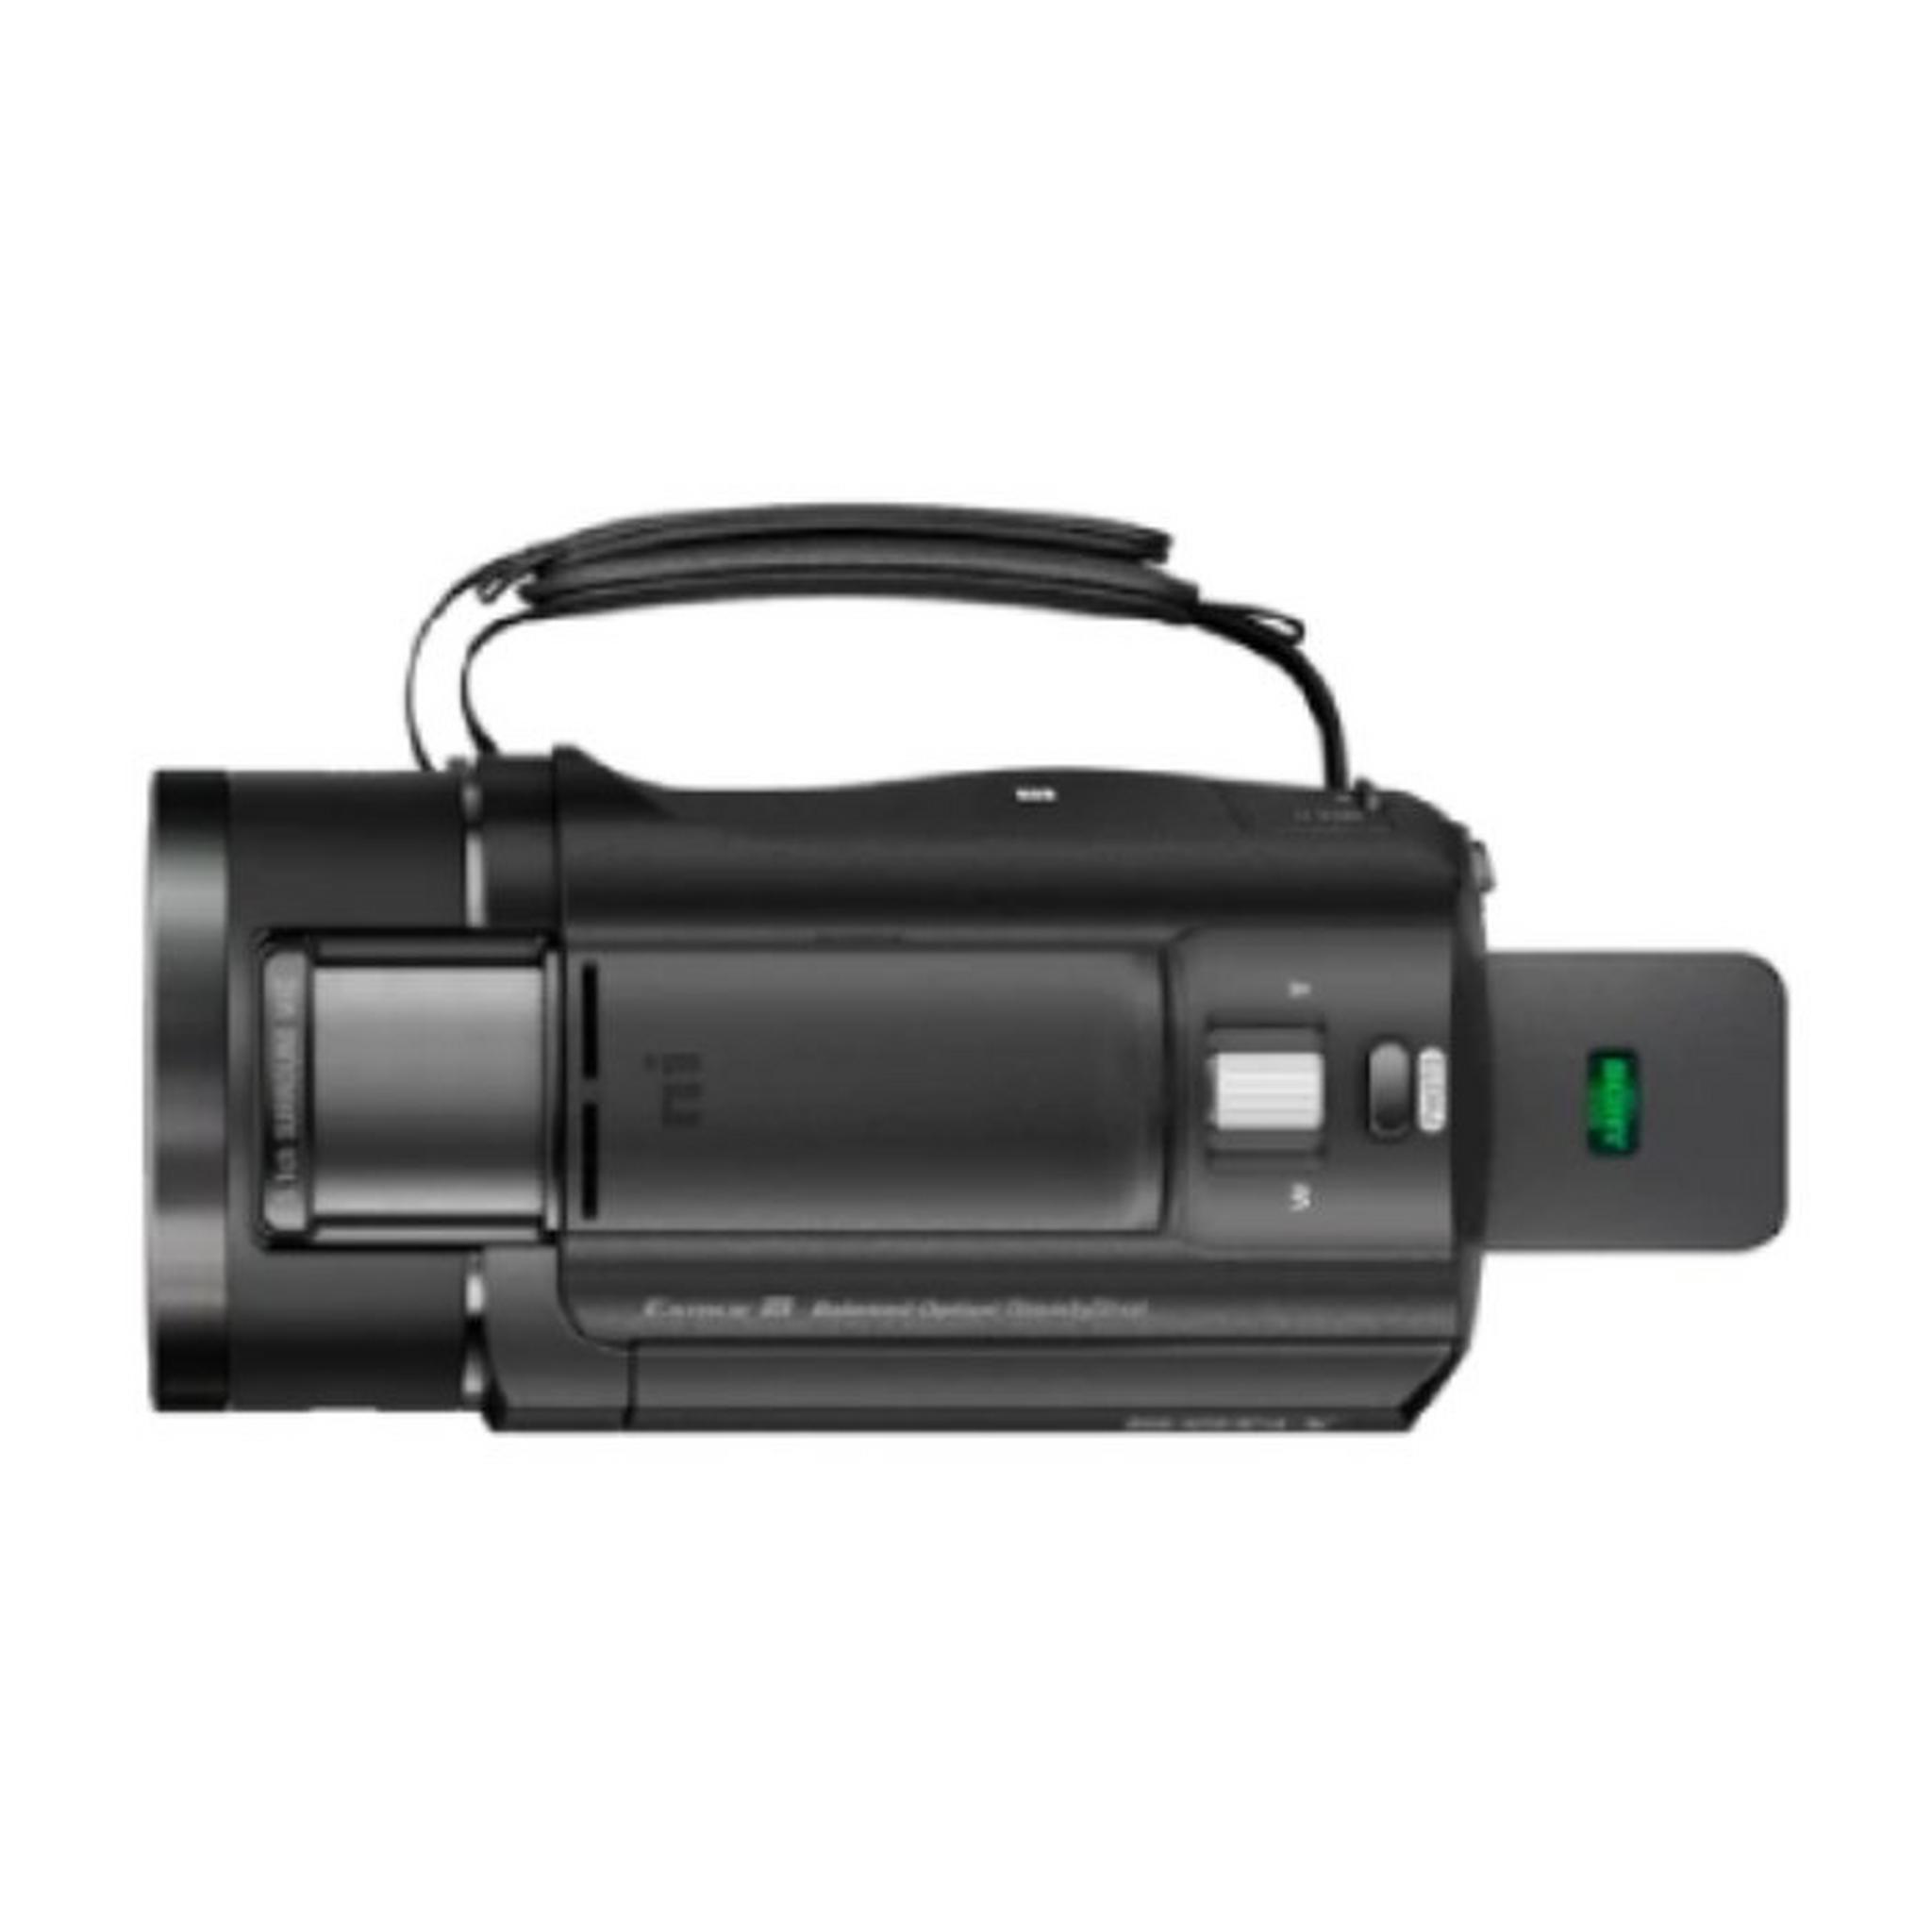 كاميرا الفيديو سوني بجودة فائقة الوضوح 4كي هاندي كام (FDR-AX43 / BC)